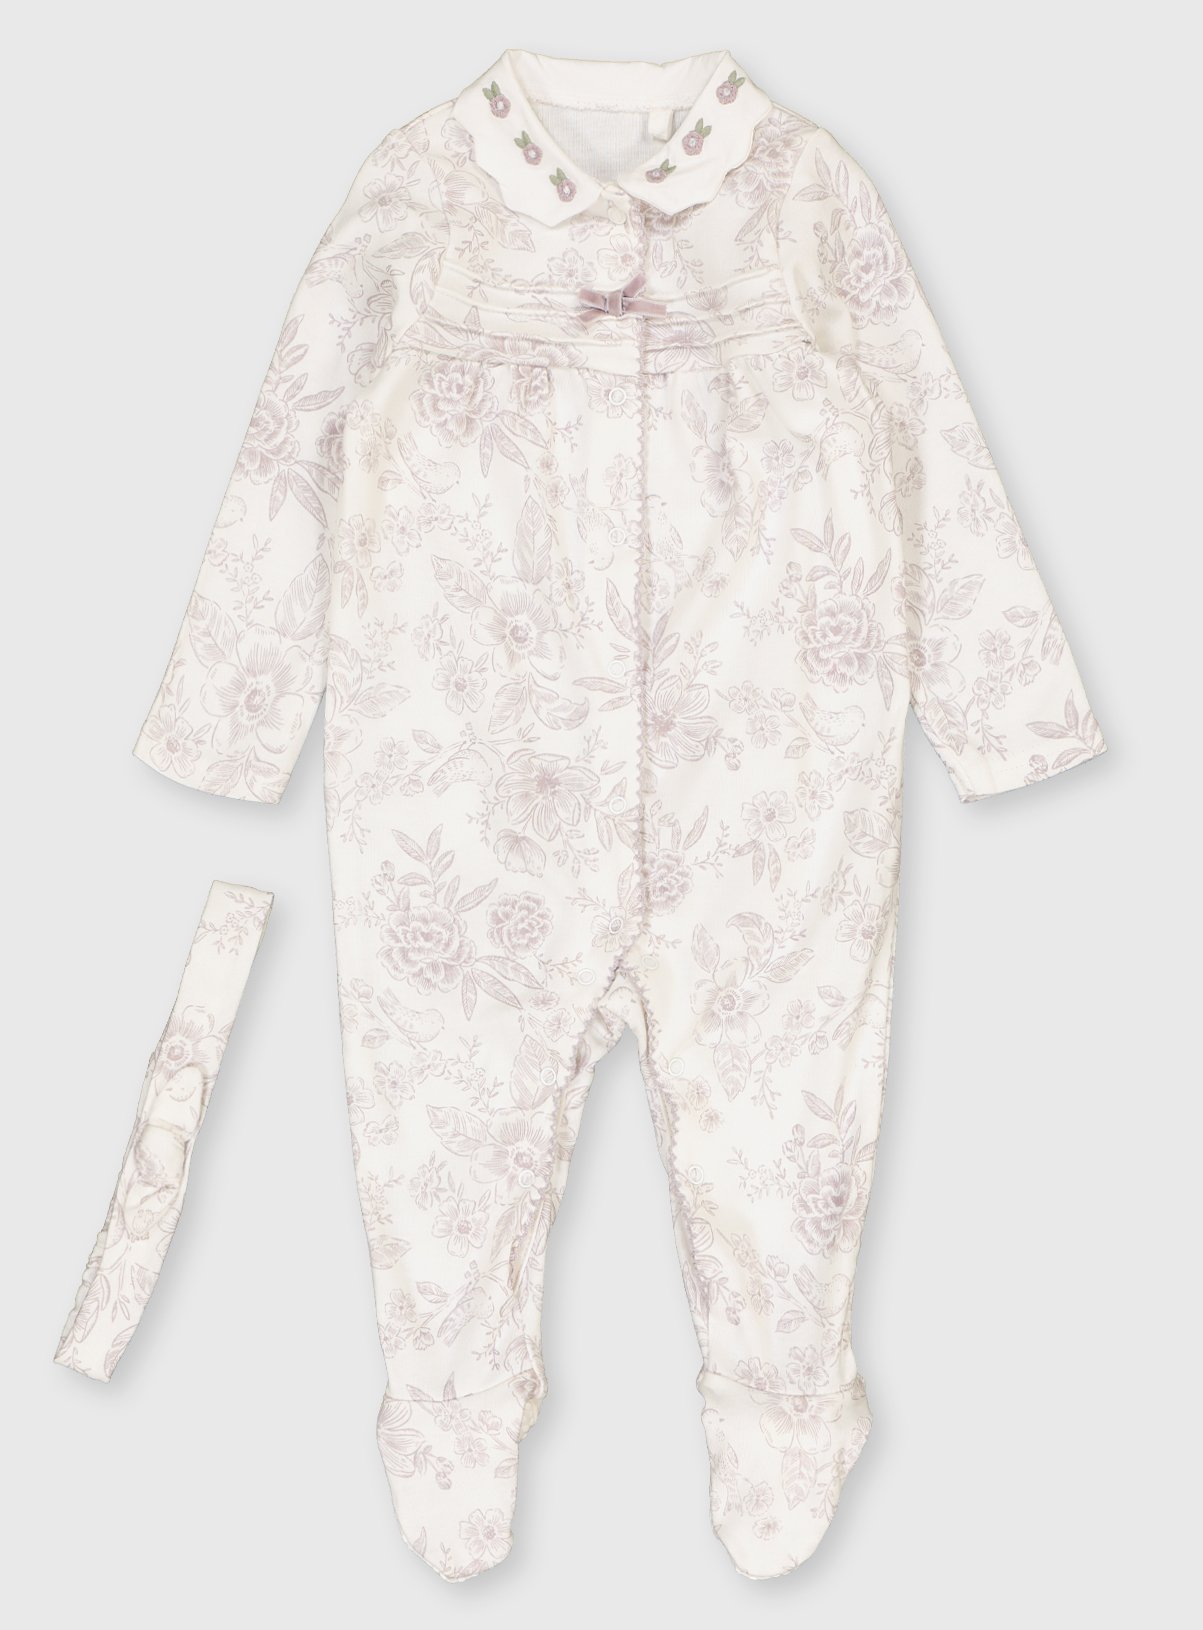 sainsbury's baby girl sleepsuits